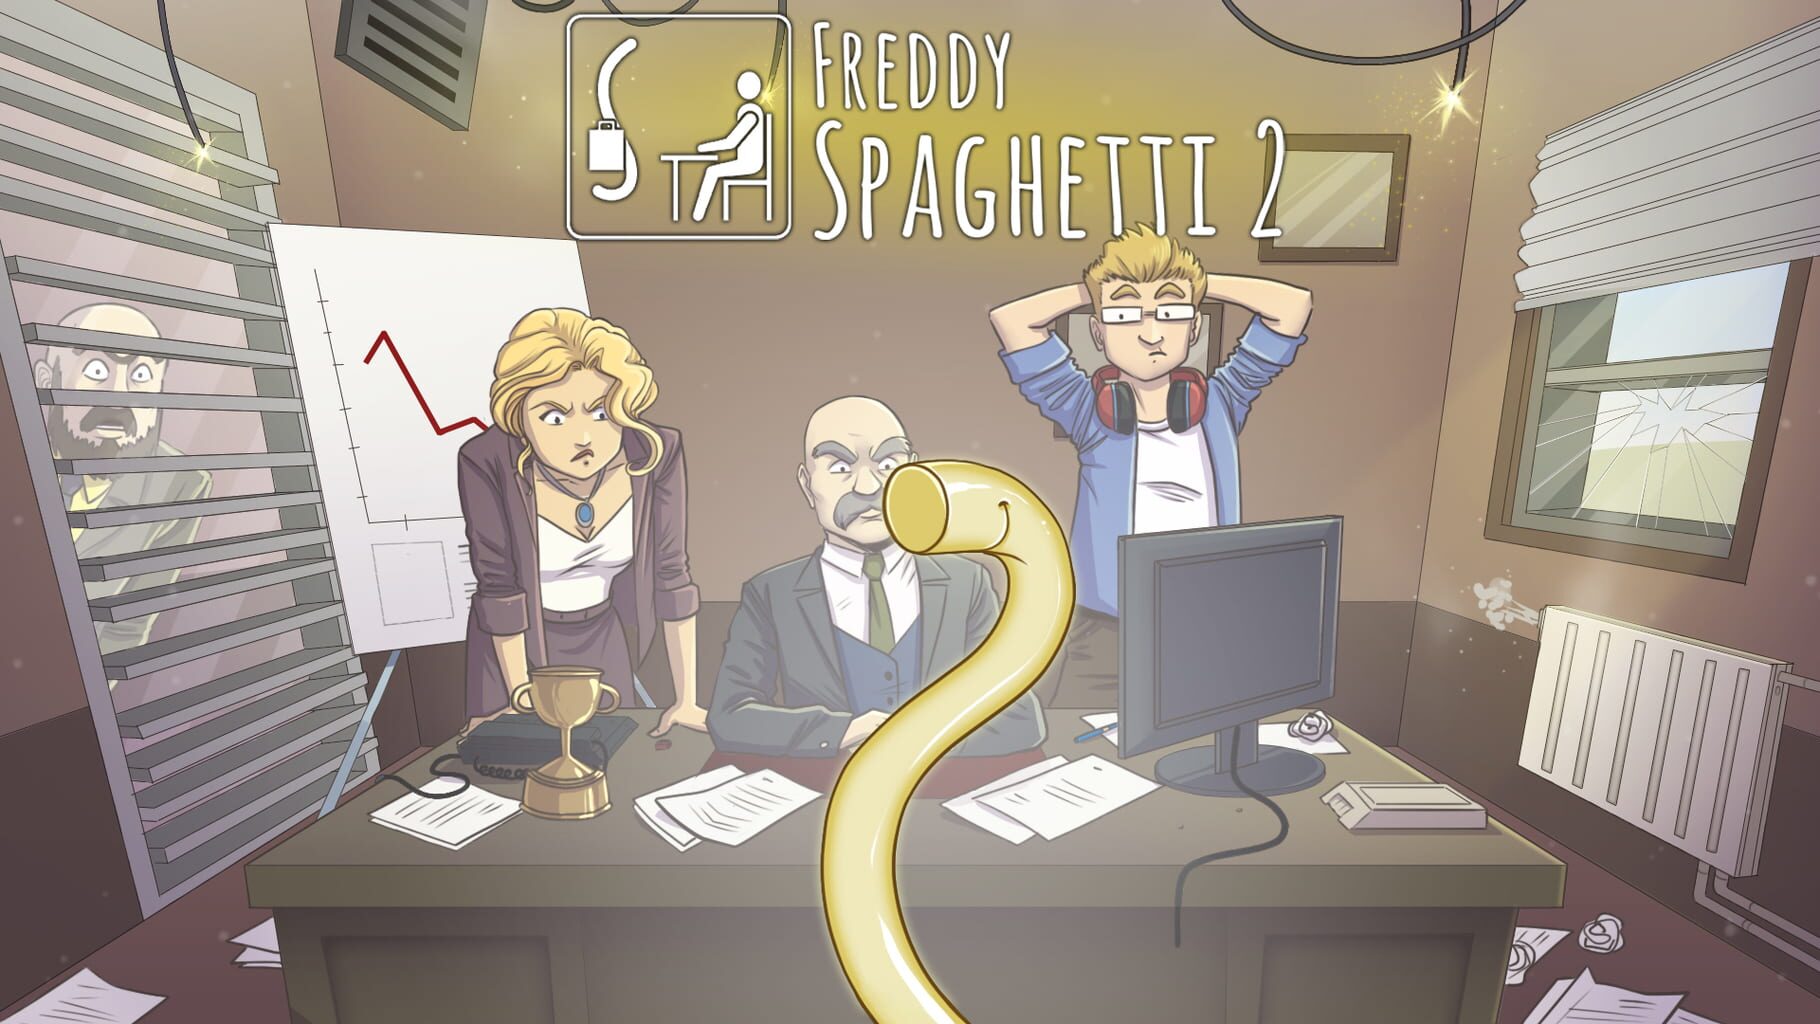 Freddy Spaghetti 2 artwork